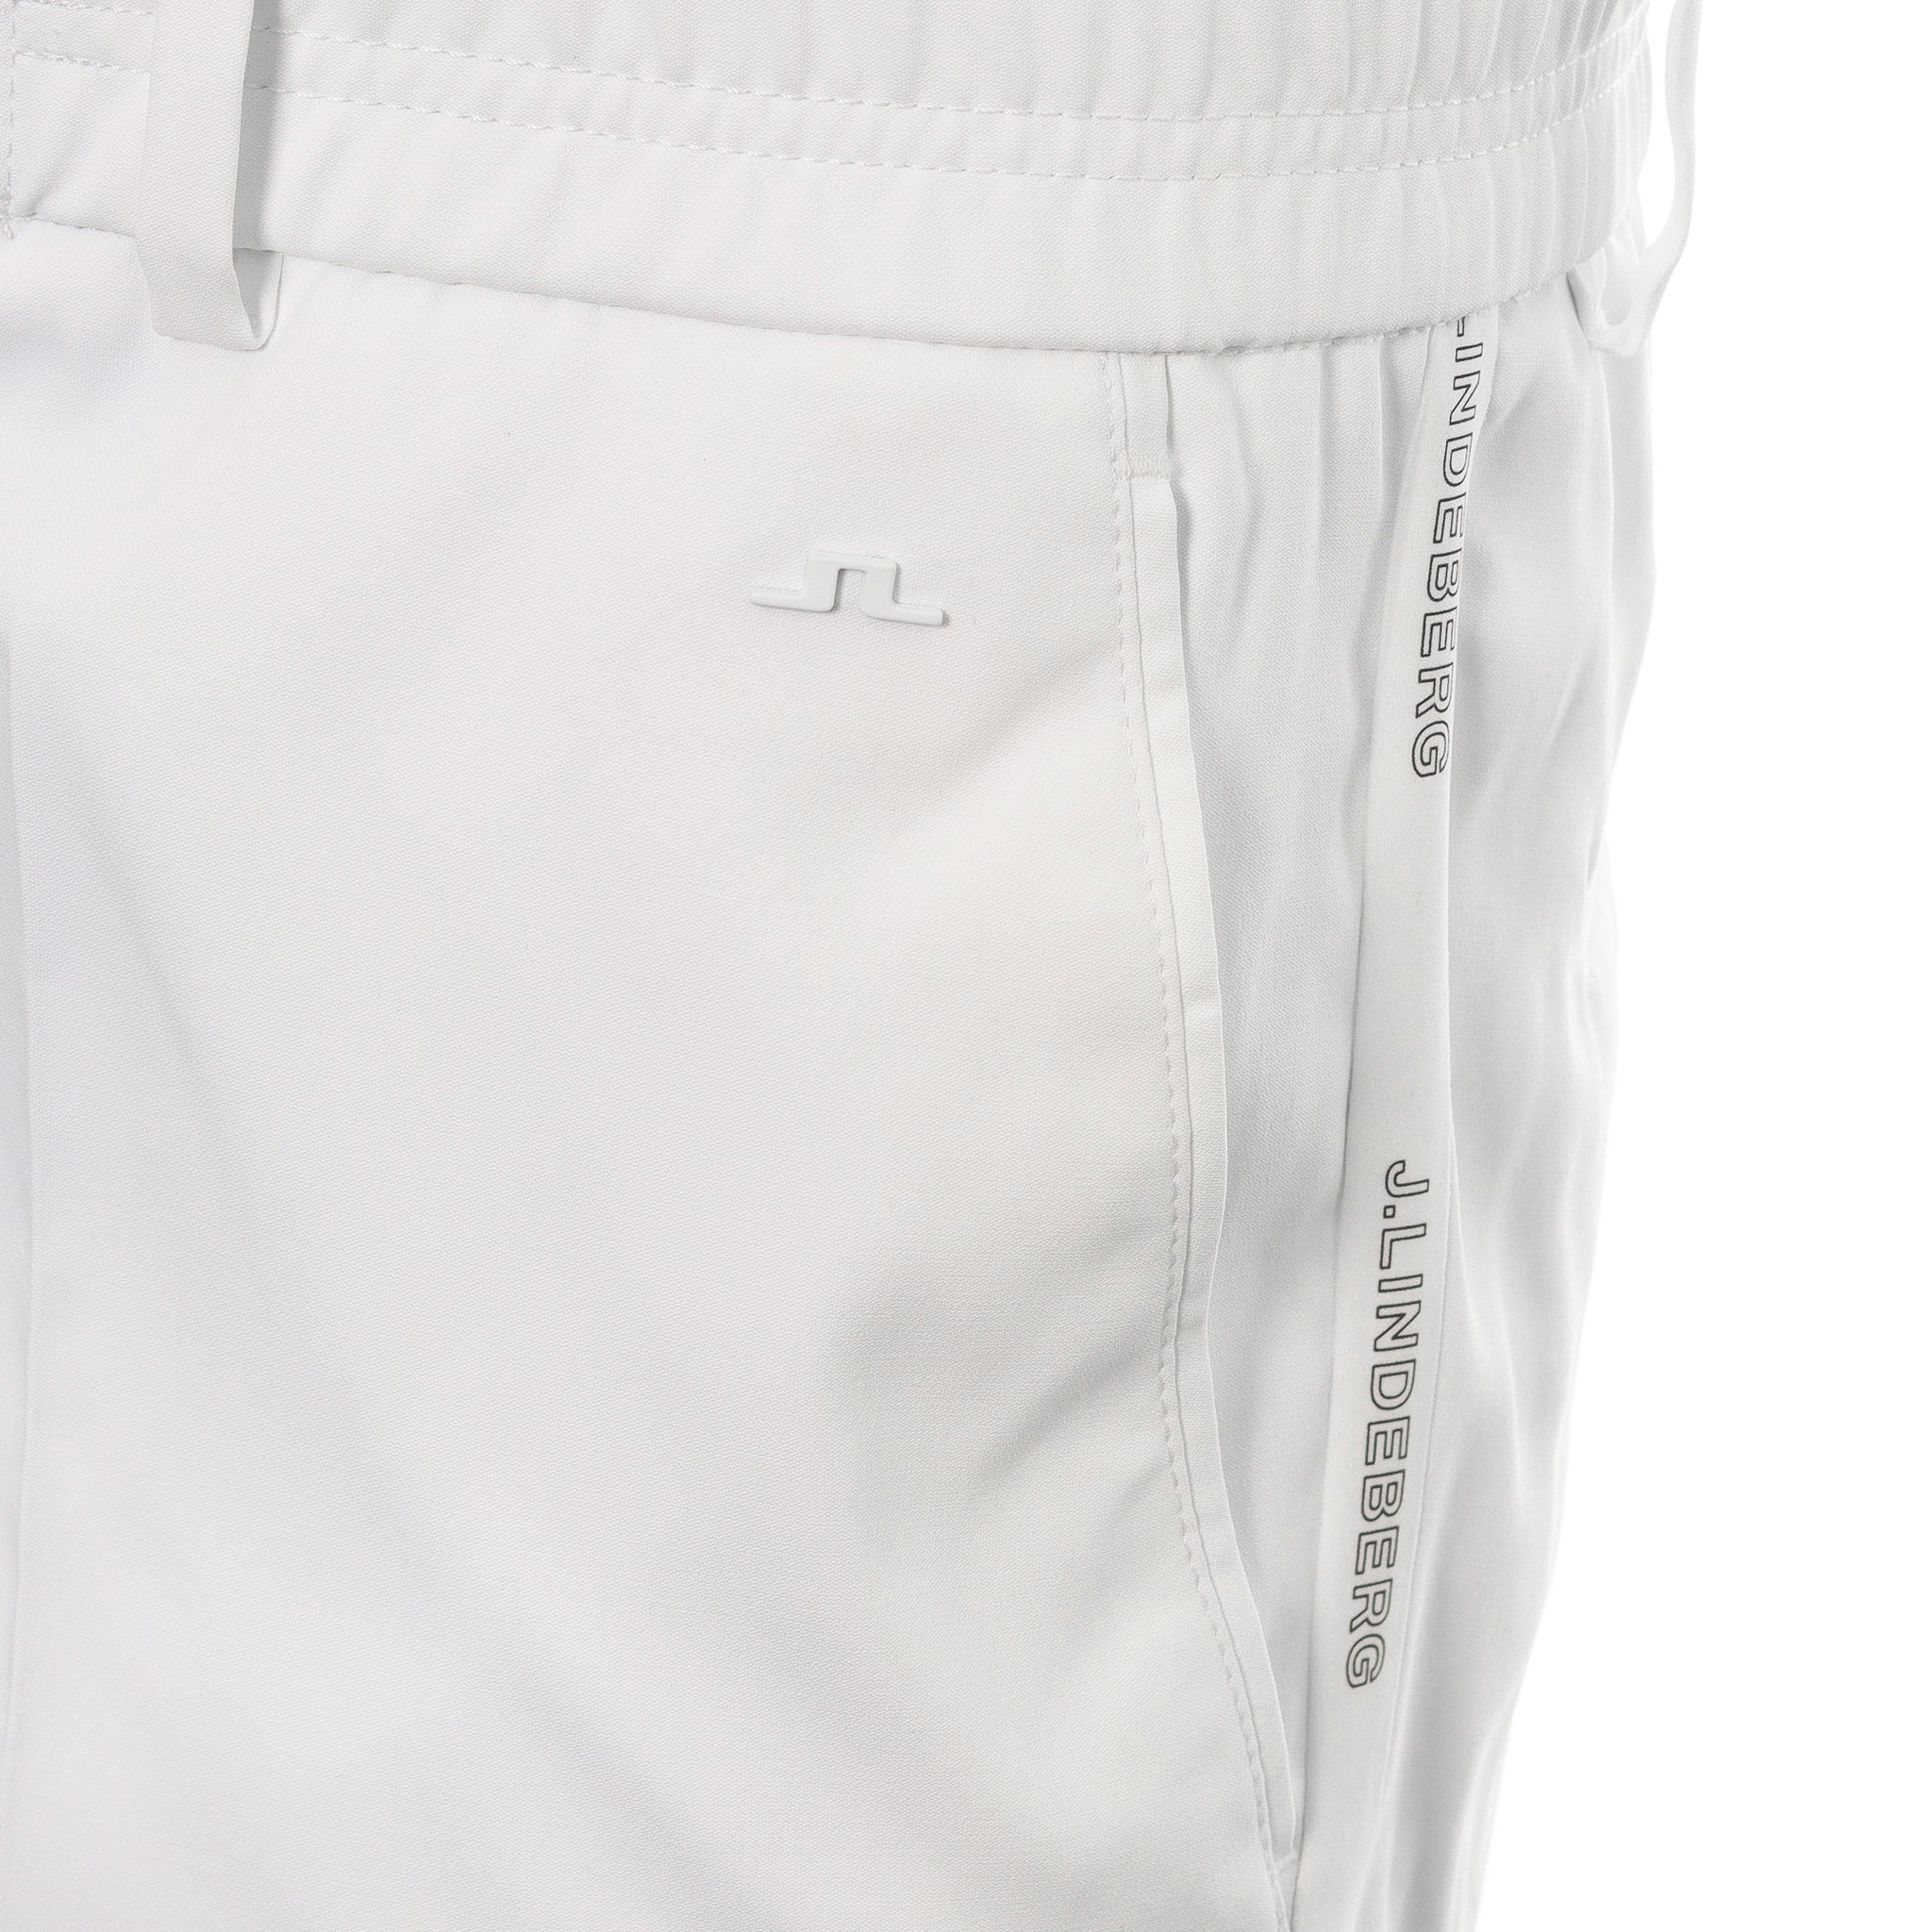 j-lindeberg-golf-stuart-stripe-shorts-gmpa07913-0000-white